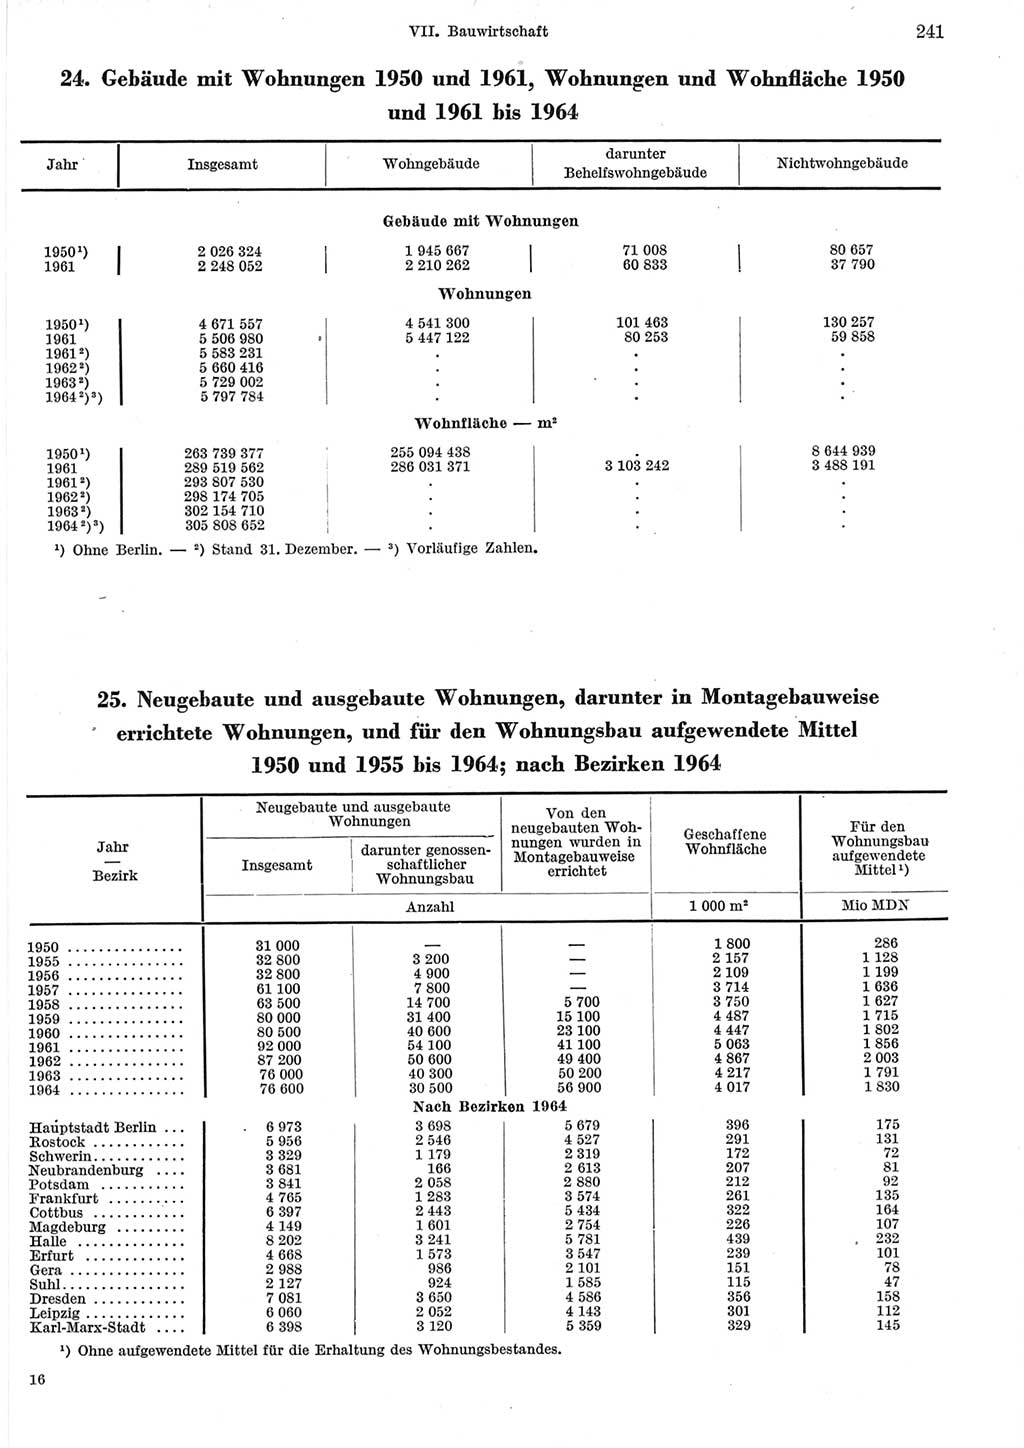 Statistisches Jahrbuch der Deutschen Demokratischen Republik (DDR) 1965, Seite 241 (Stat. Jb. DDR 1965, S. 241)